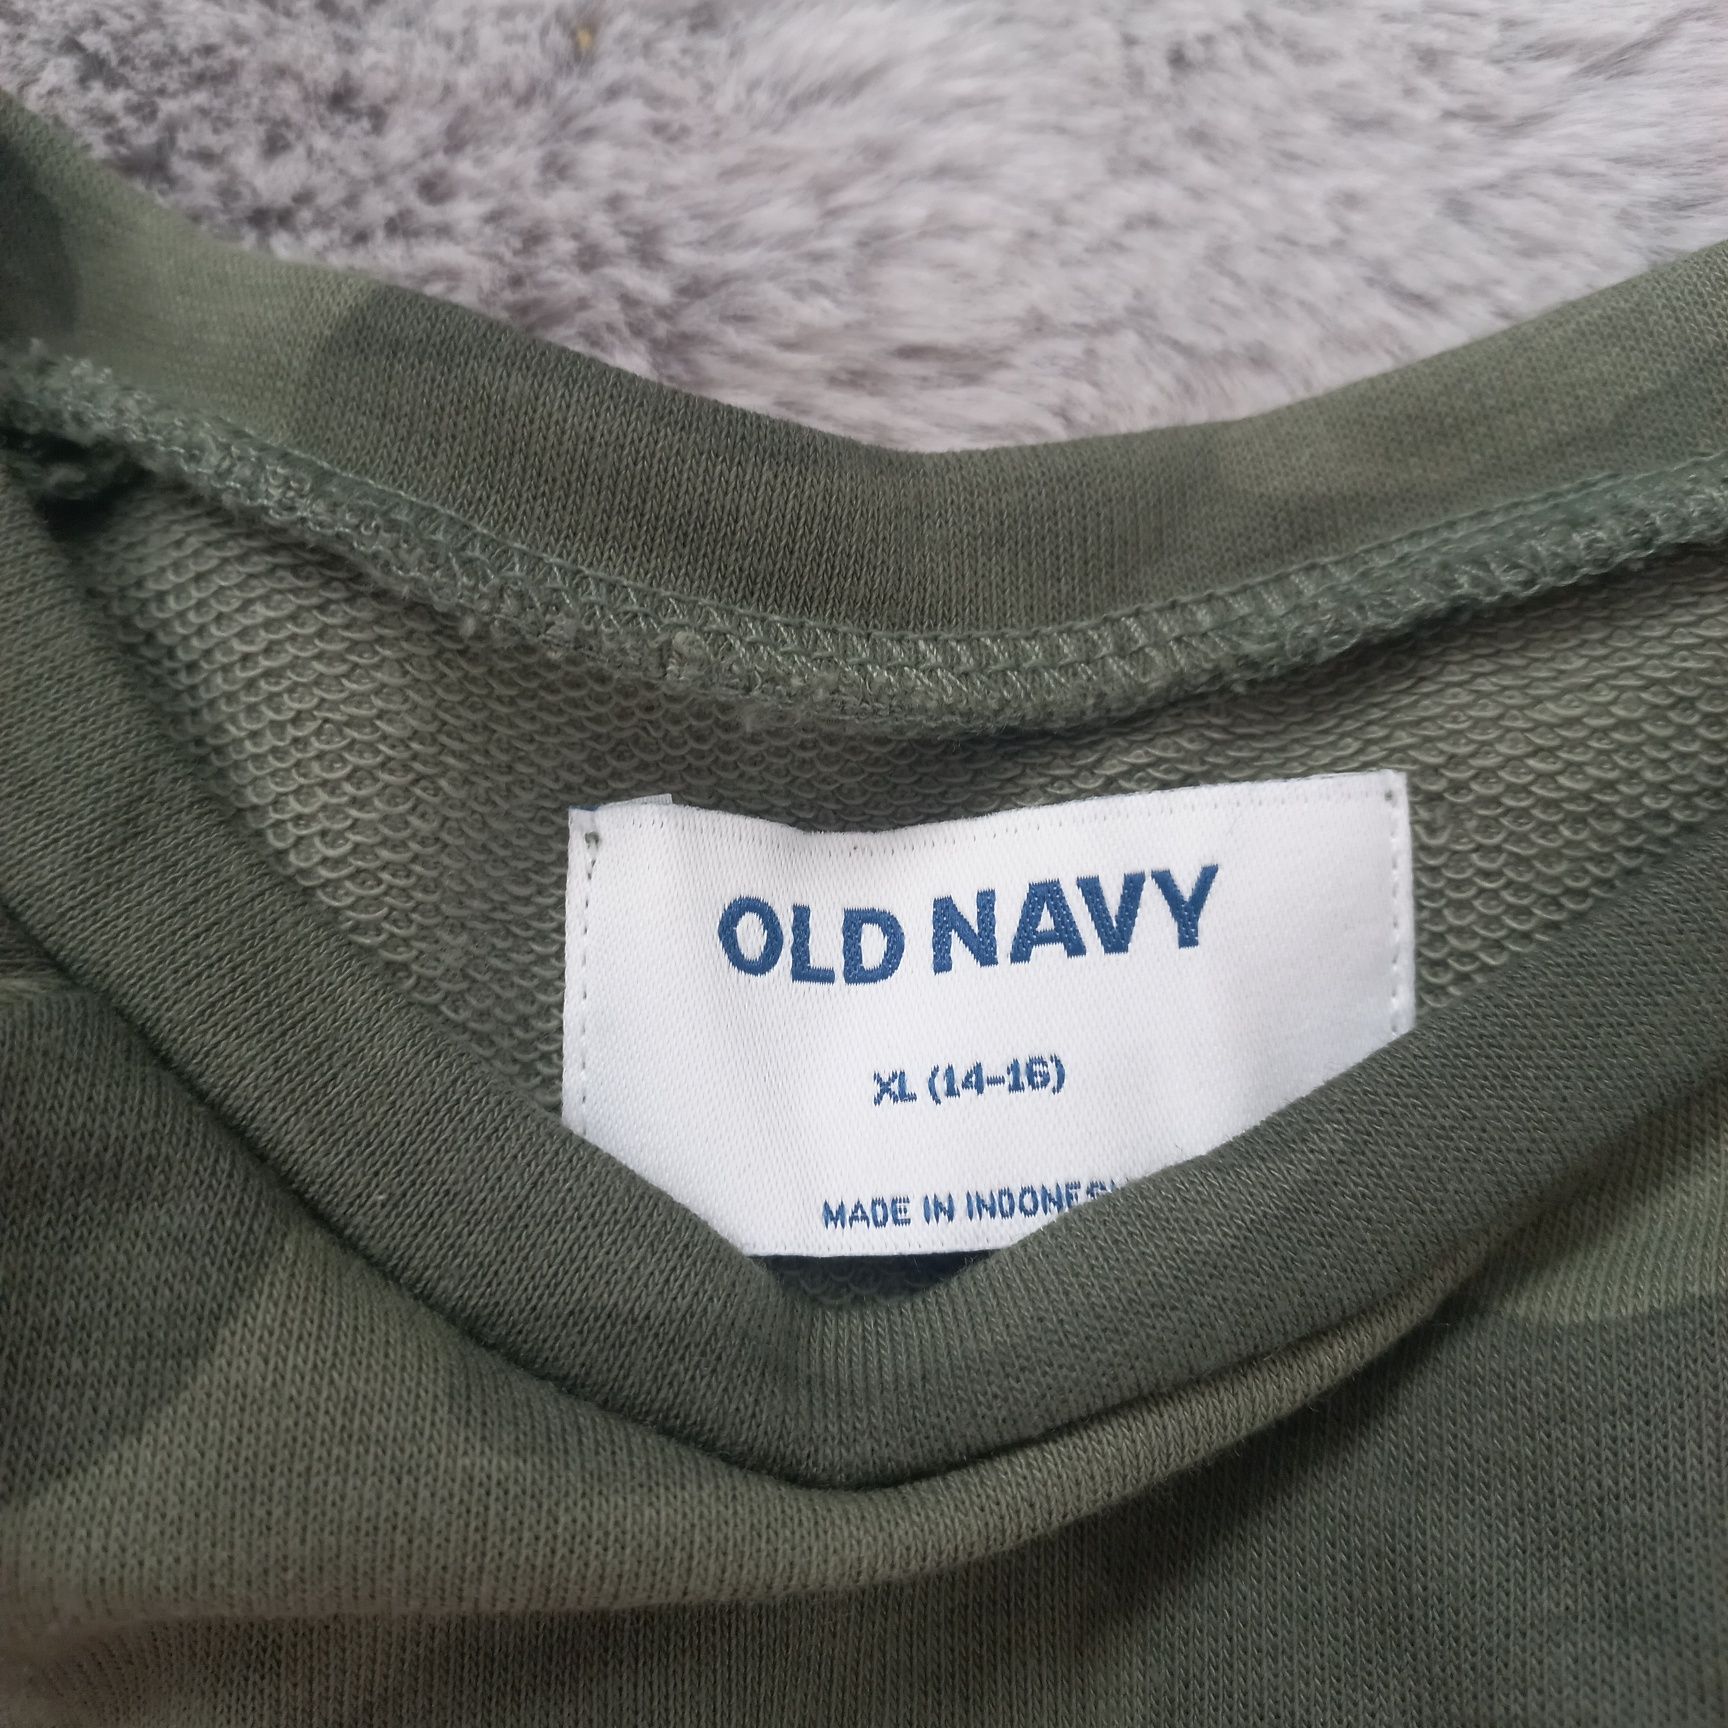 Sukienka tunika Old navy nowa 14-16